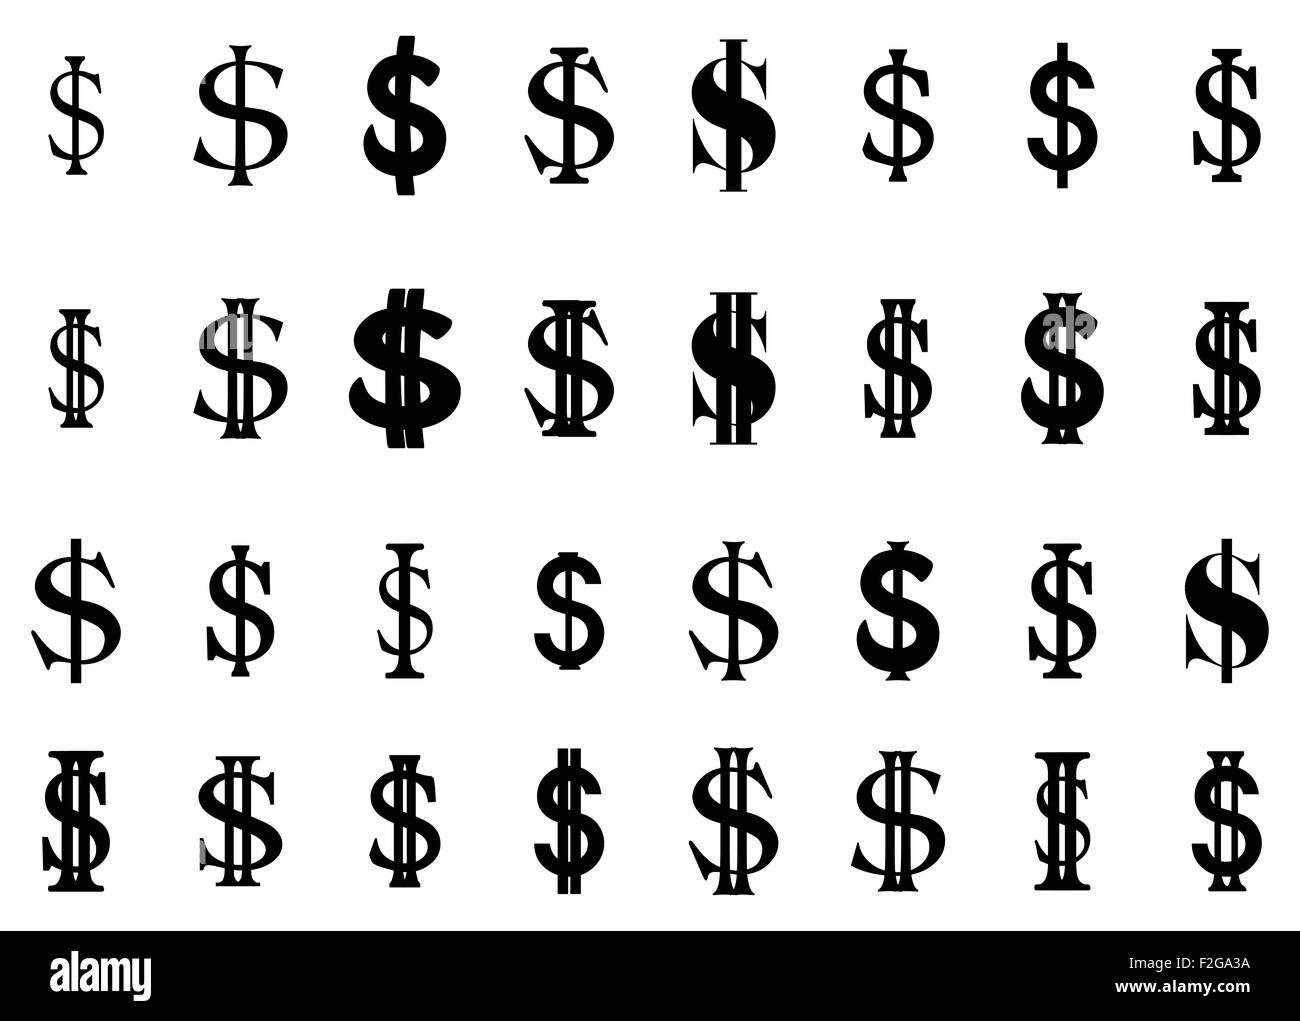 Conjunto de piso simple signo de dólar EE.UU. Silhouette ilustración vectorial aislar sobre fondo blanco. Foto de stock